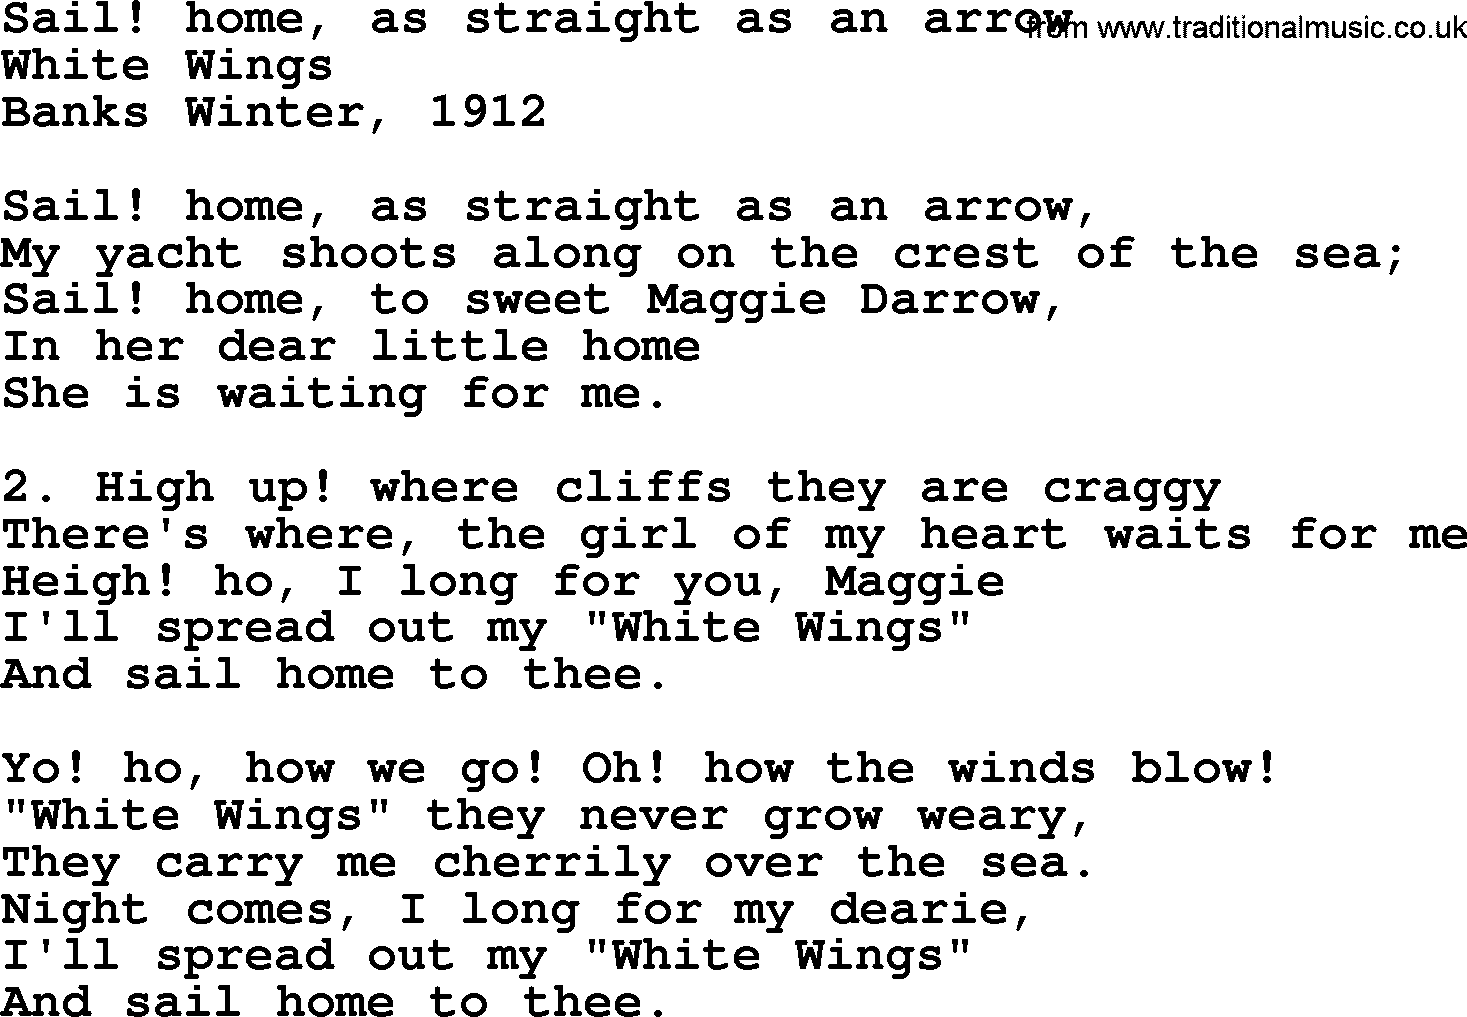 Sea Song or Shantie: Sail Home As Straight As An Arrow, lyrics